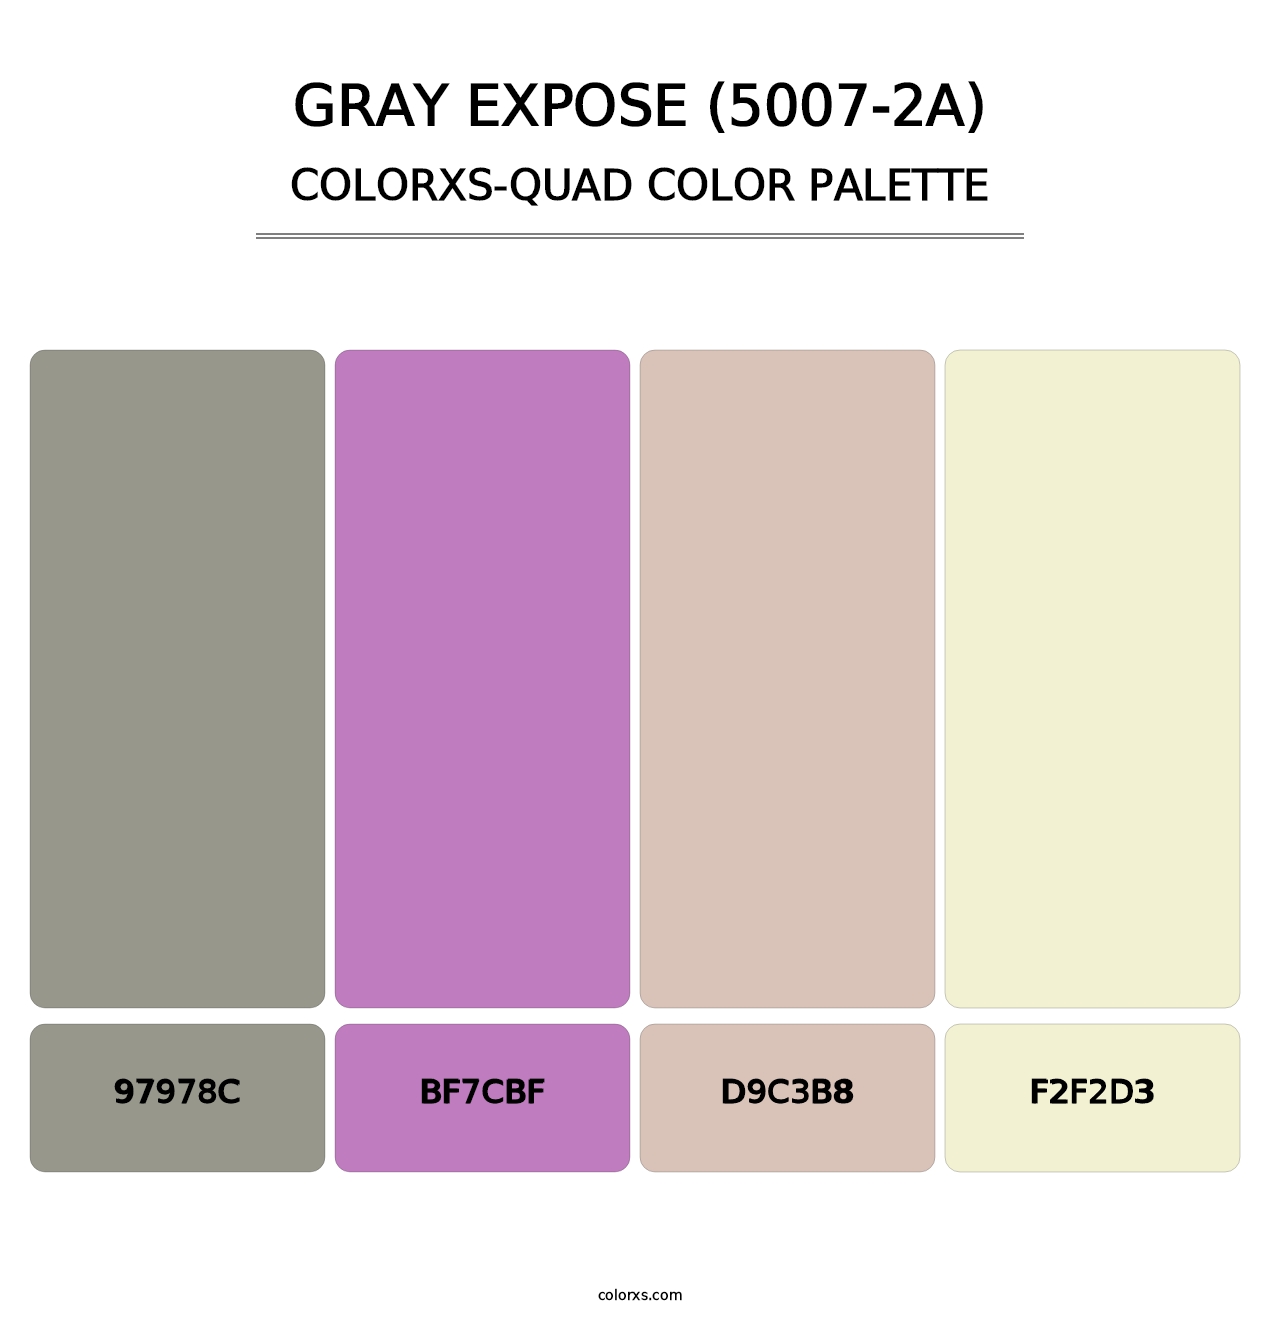 Gray Expose (5007-2A) - Colorxs Quad Palette